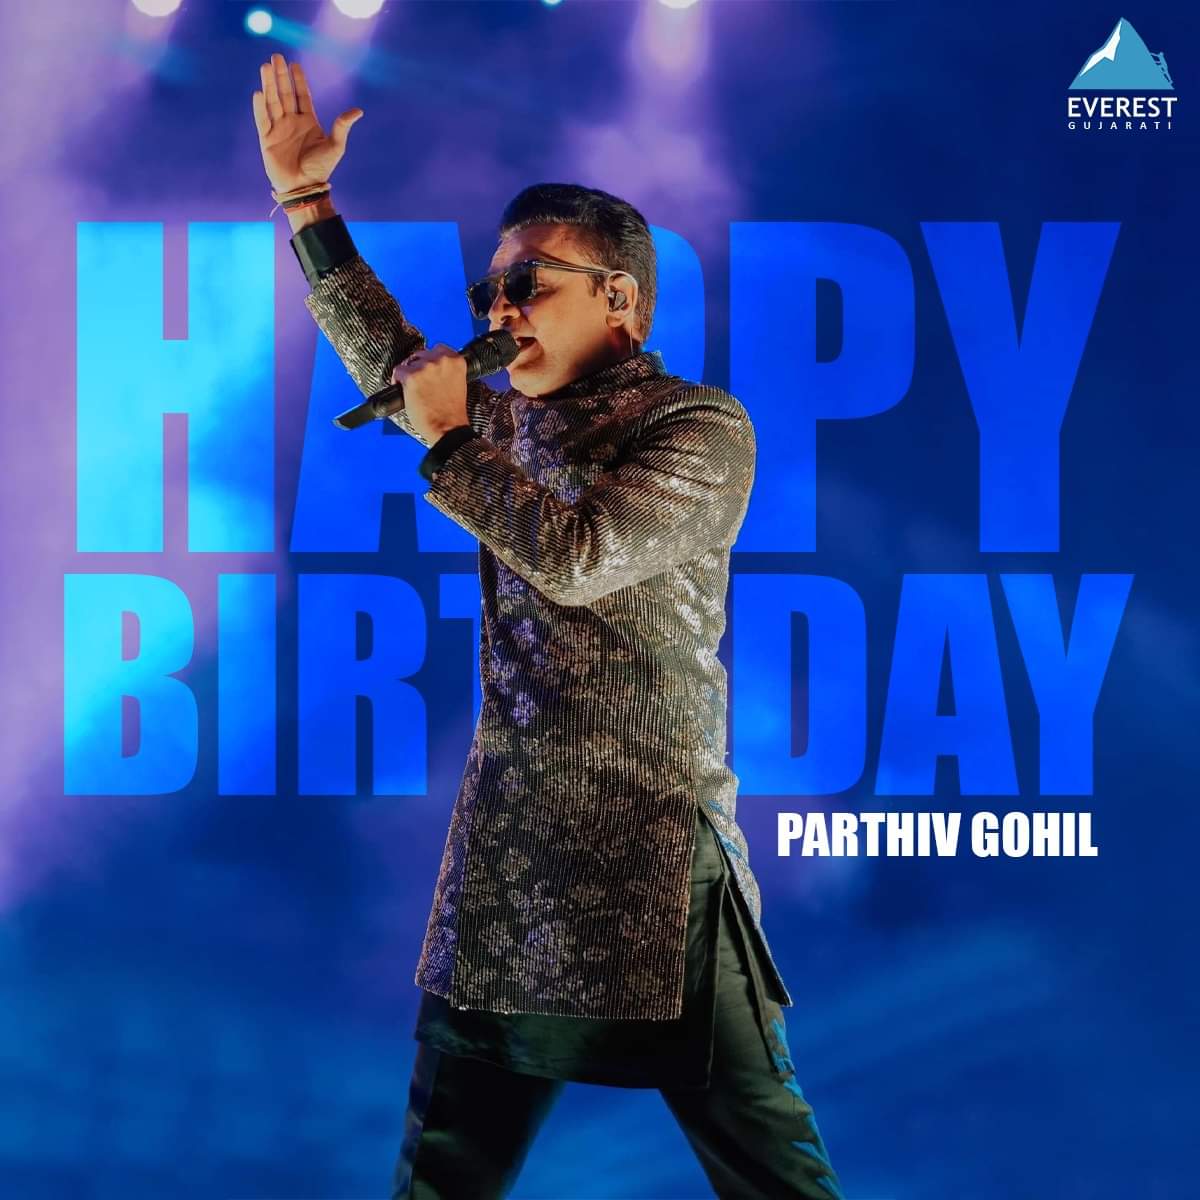 જાણીતા ગાયક કલાકાર અને નિર્માતા Parthiv Gohil જીને જન્મદિવસની હાર્દિક શુભકામનાઓ.!!!🎂🎁🥳💫

#EverestEntertainment #EverestEntertainmentGujarati #ParthivGohil #HappyBirthday #Singer #Producer #GujaratiFilmIndustry #BirthdayWishes